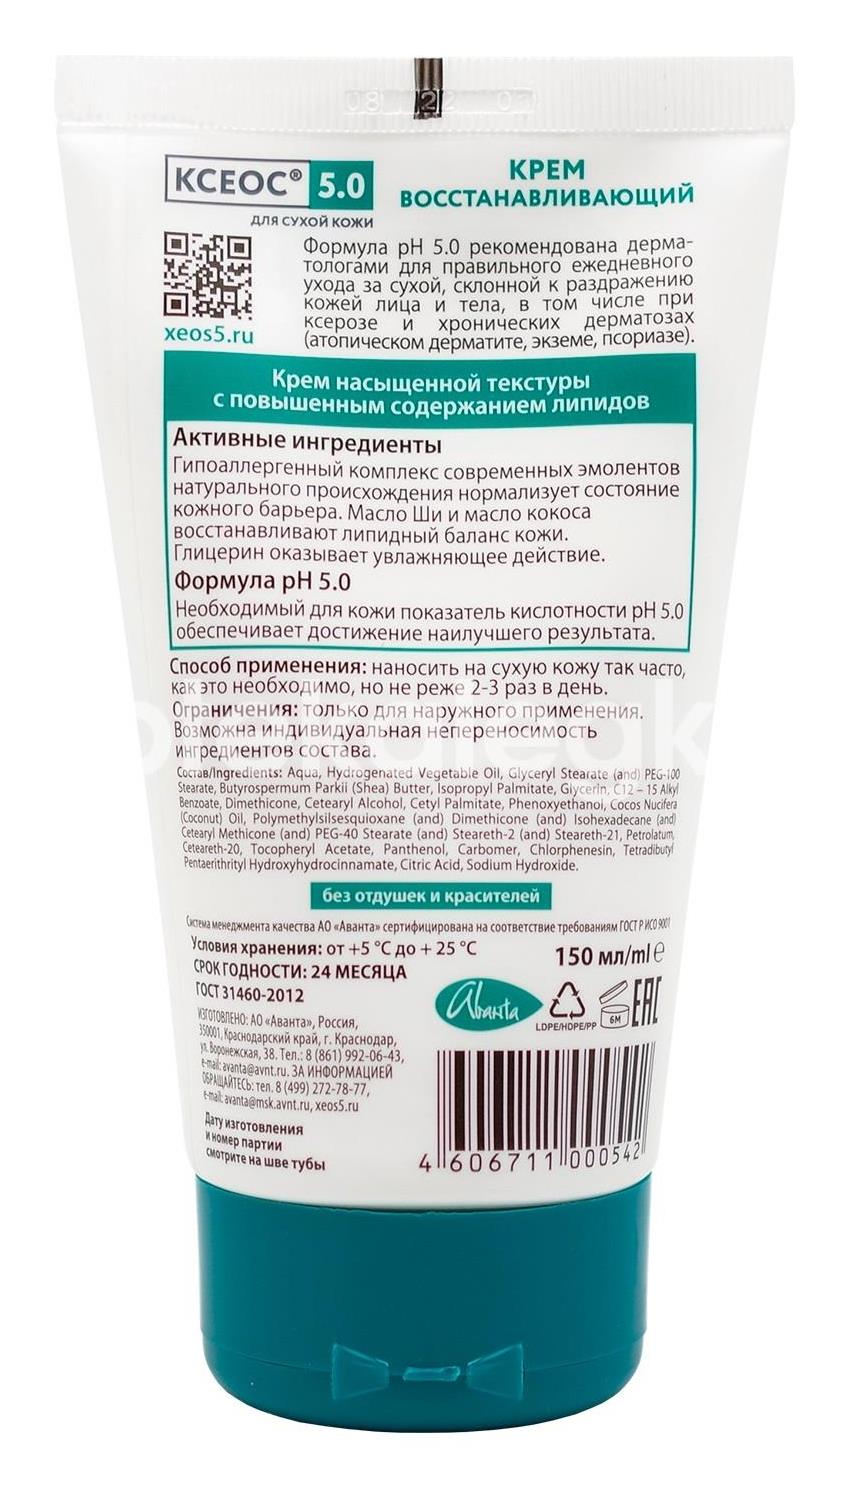 Ксеос ph 5.0 крем восстанавливающий для лица и тела при повышенной сухости кожи, 150 мл - 6